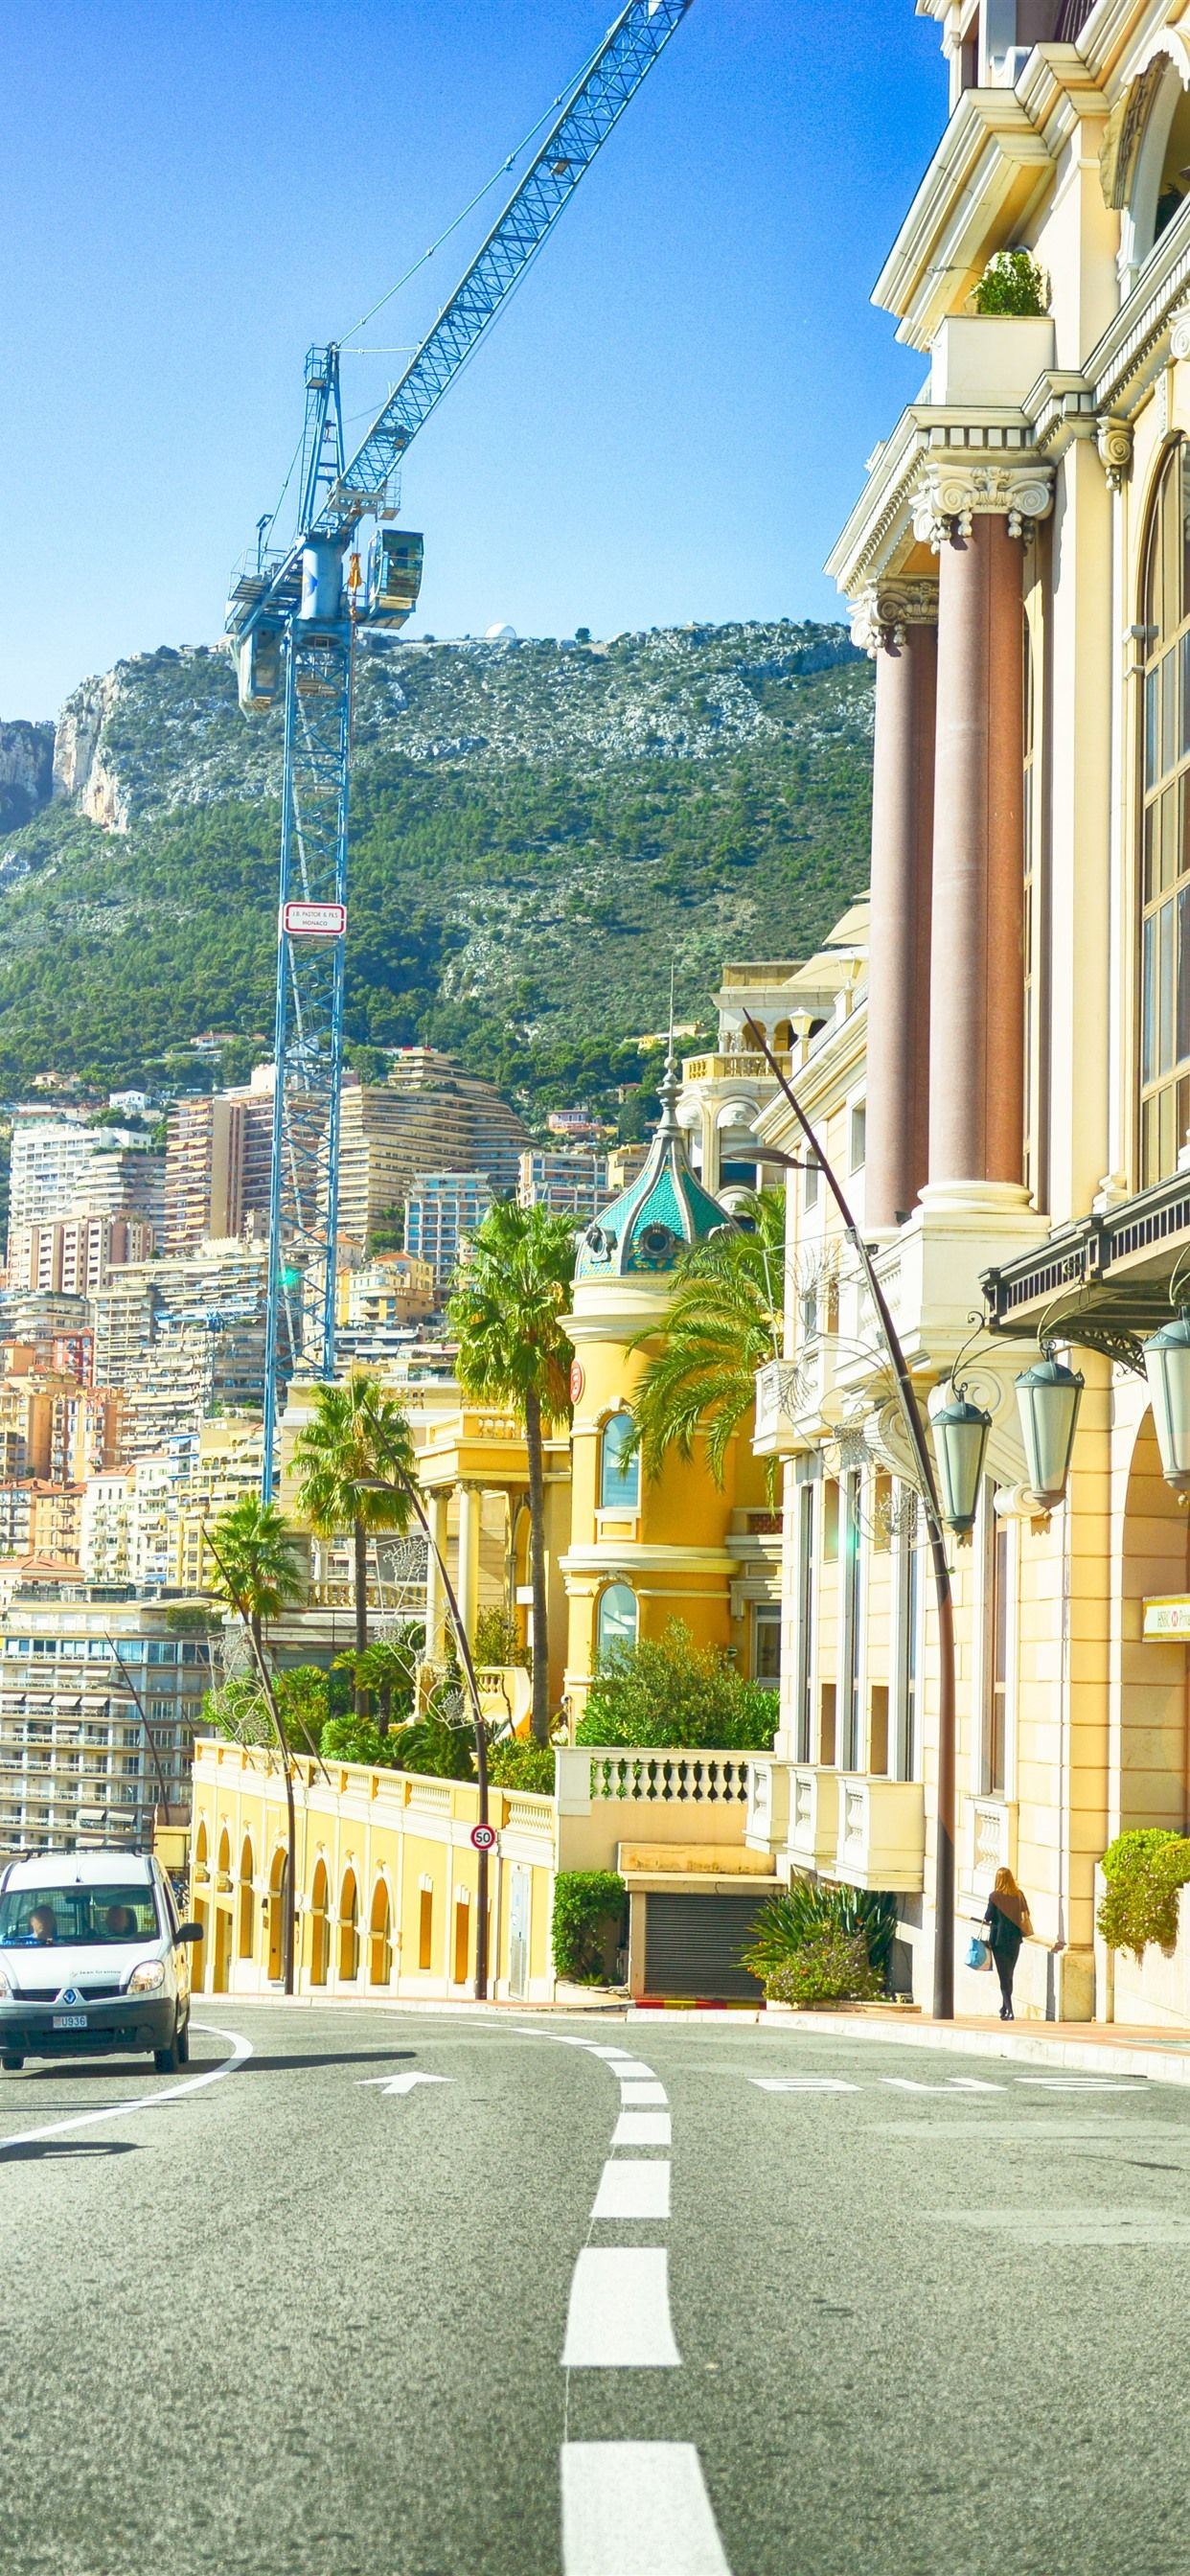 Monaco, European, city, street, buildings, road, people 1242x2688